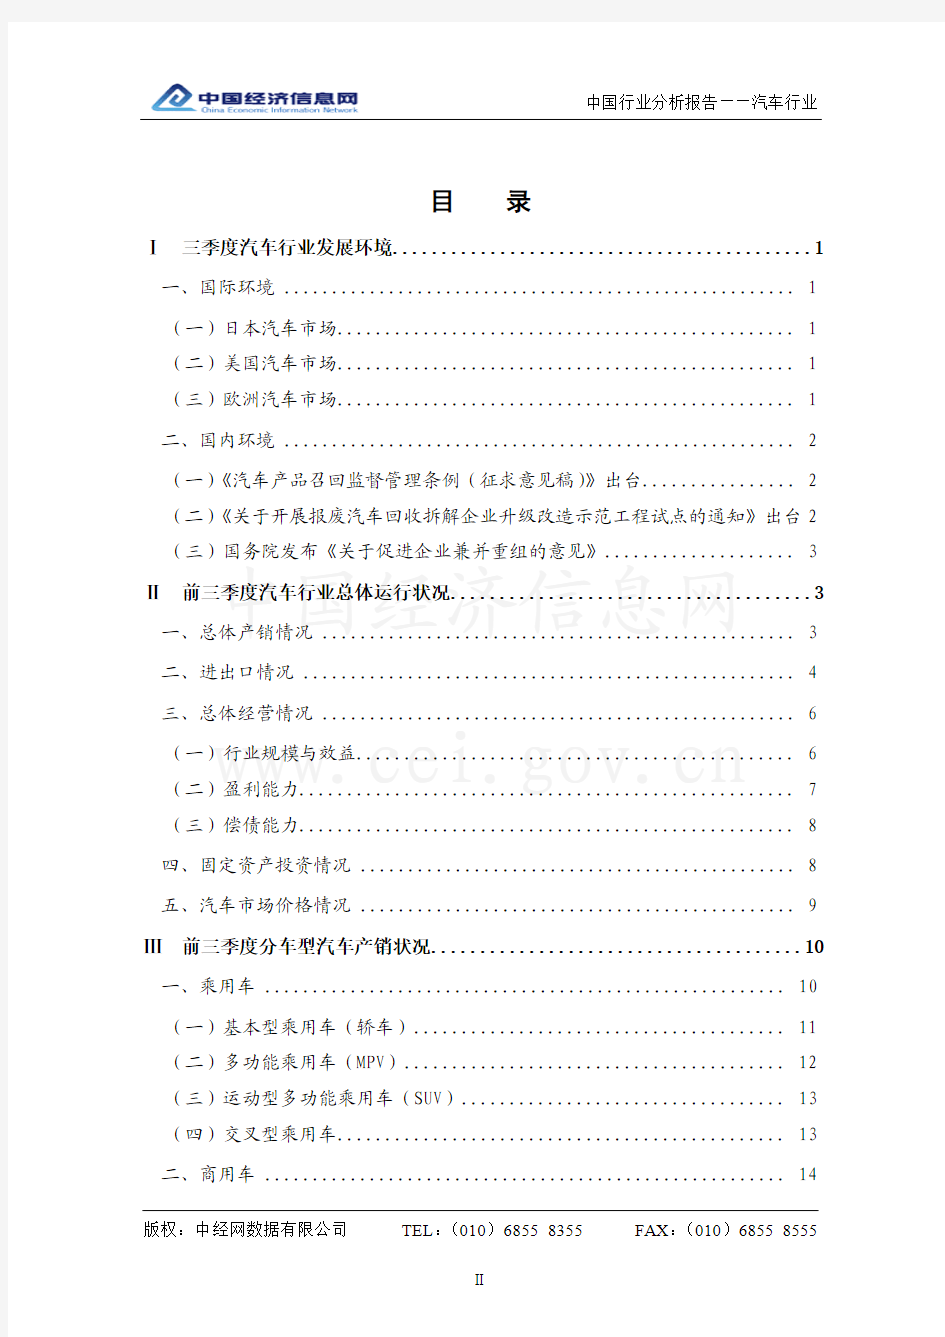 中国汽车行业分析(2010年3季度)